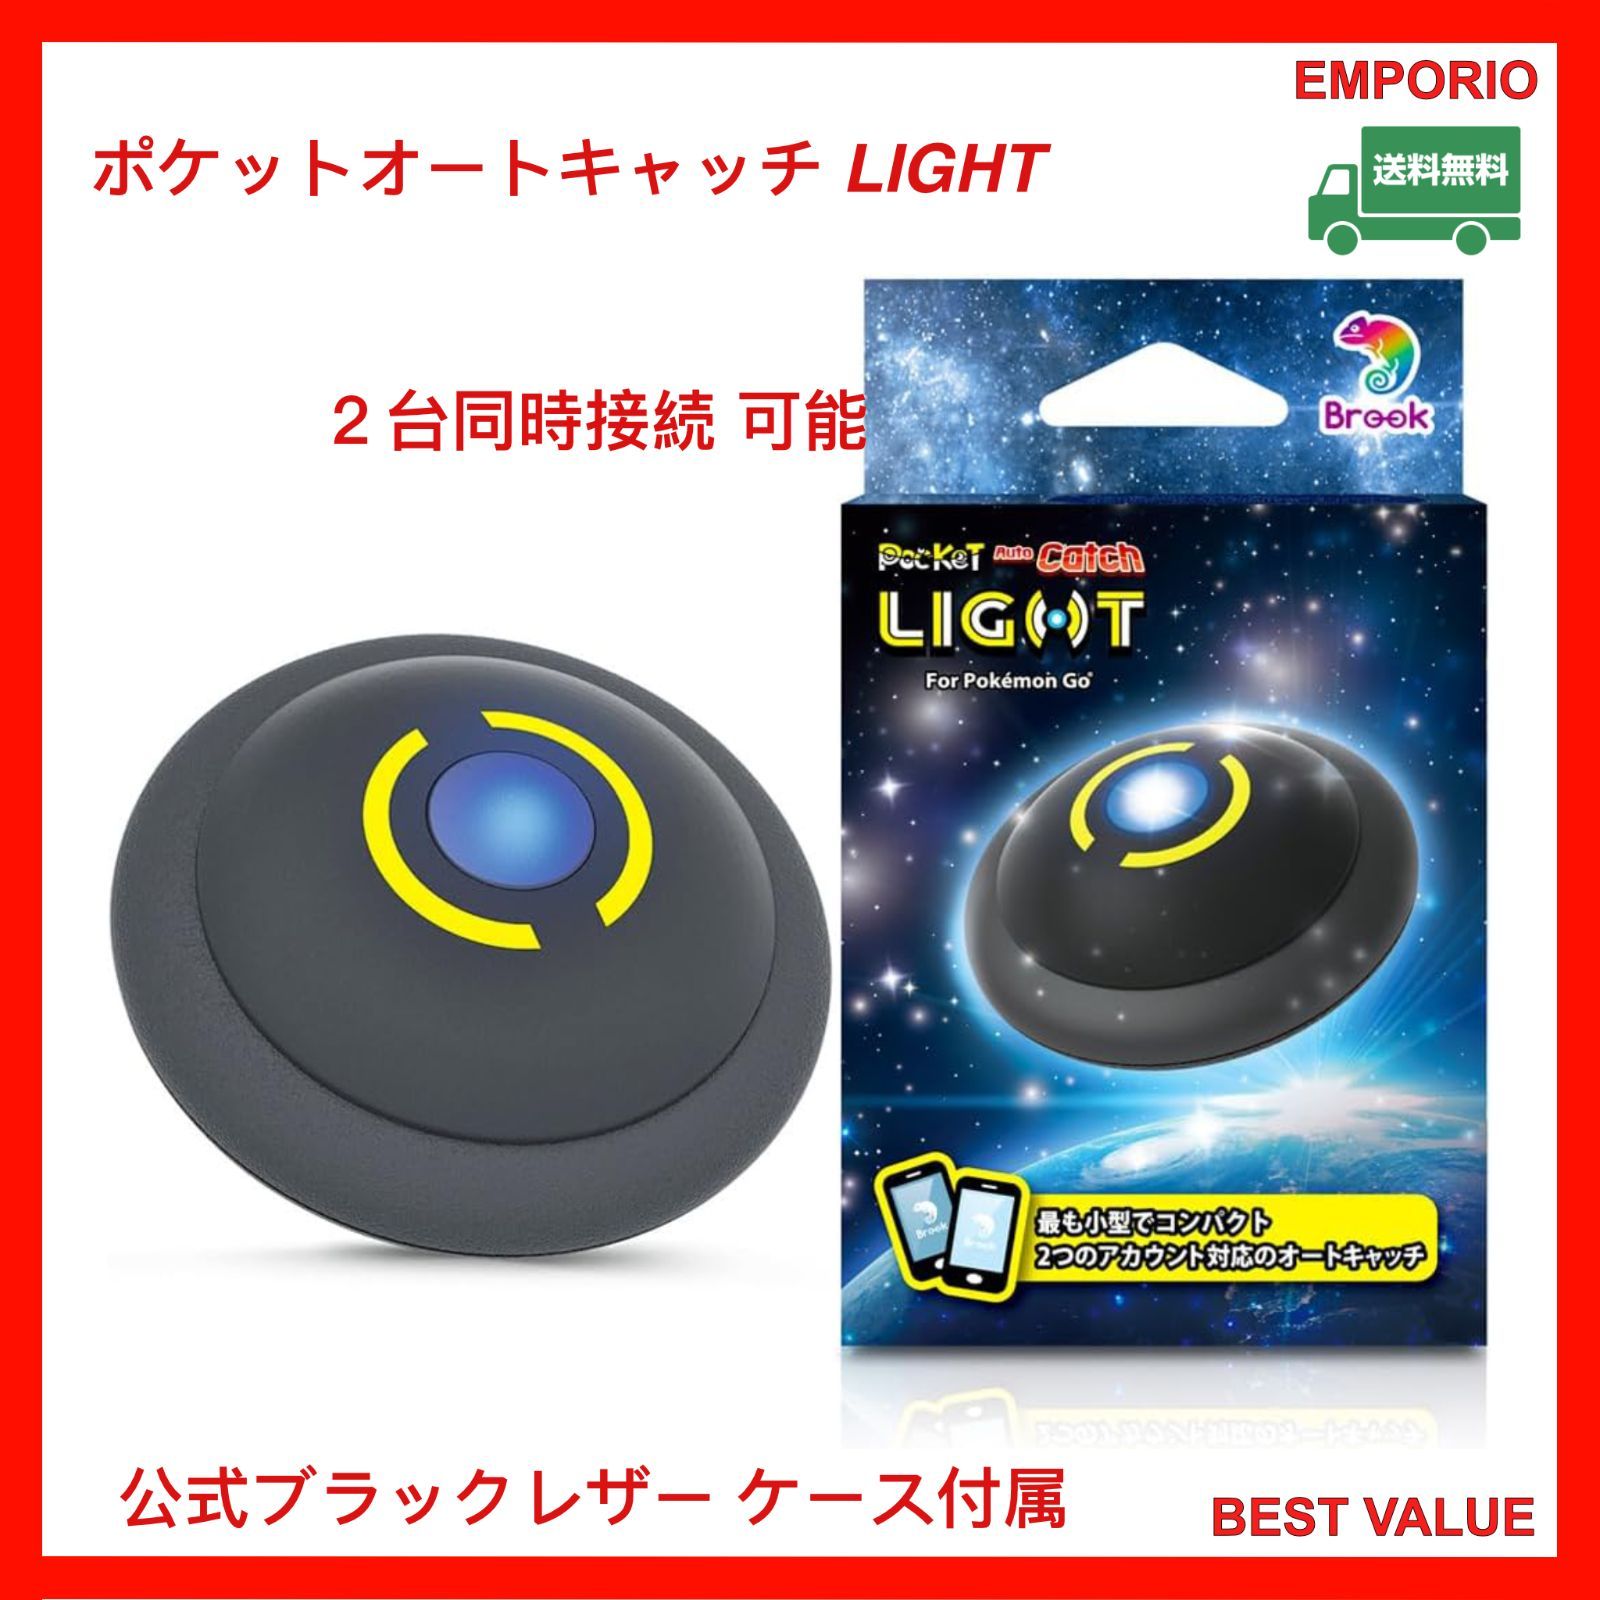 【未開封】ポケモン Light Pocket Auto Catch【公式正規品】